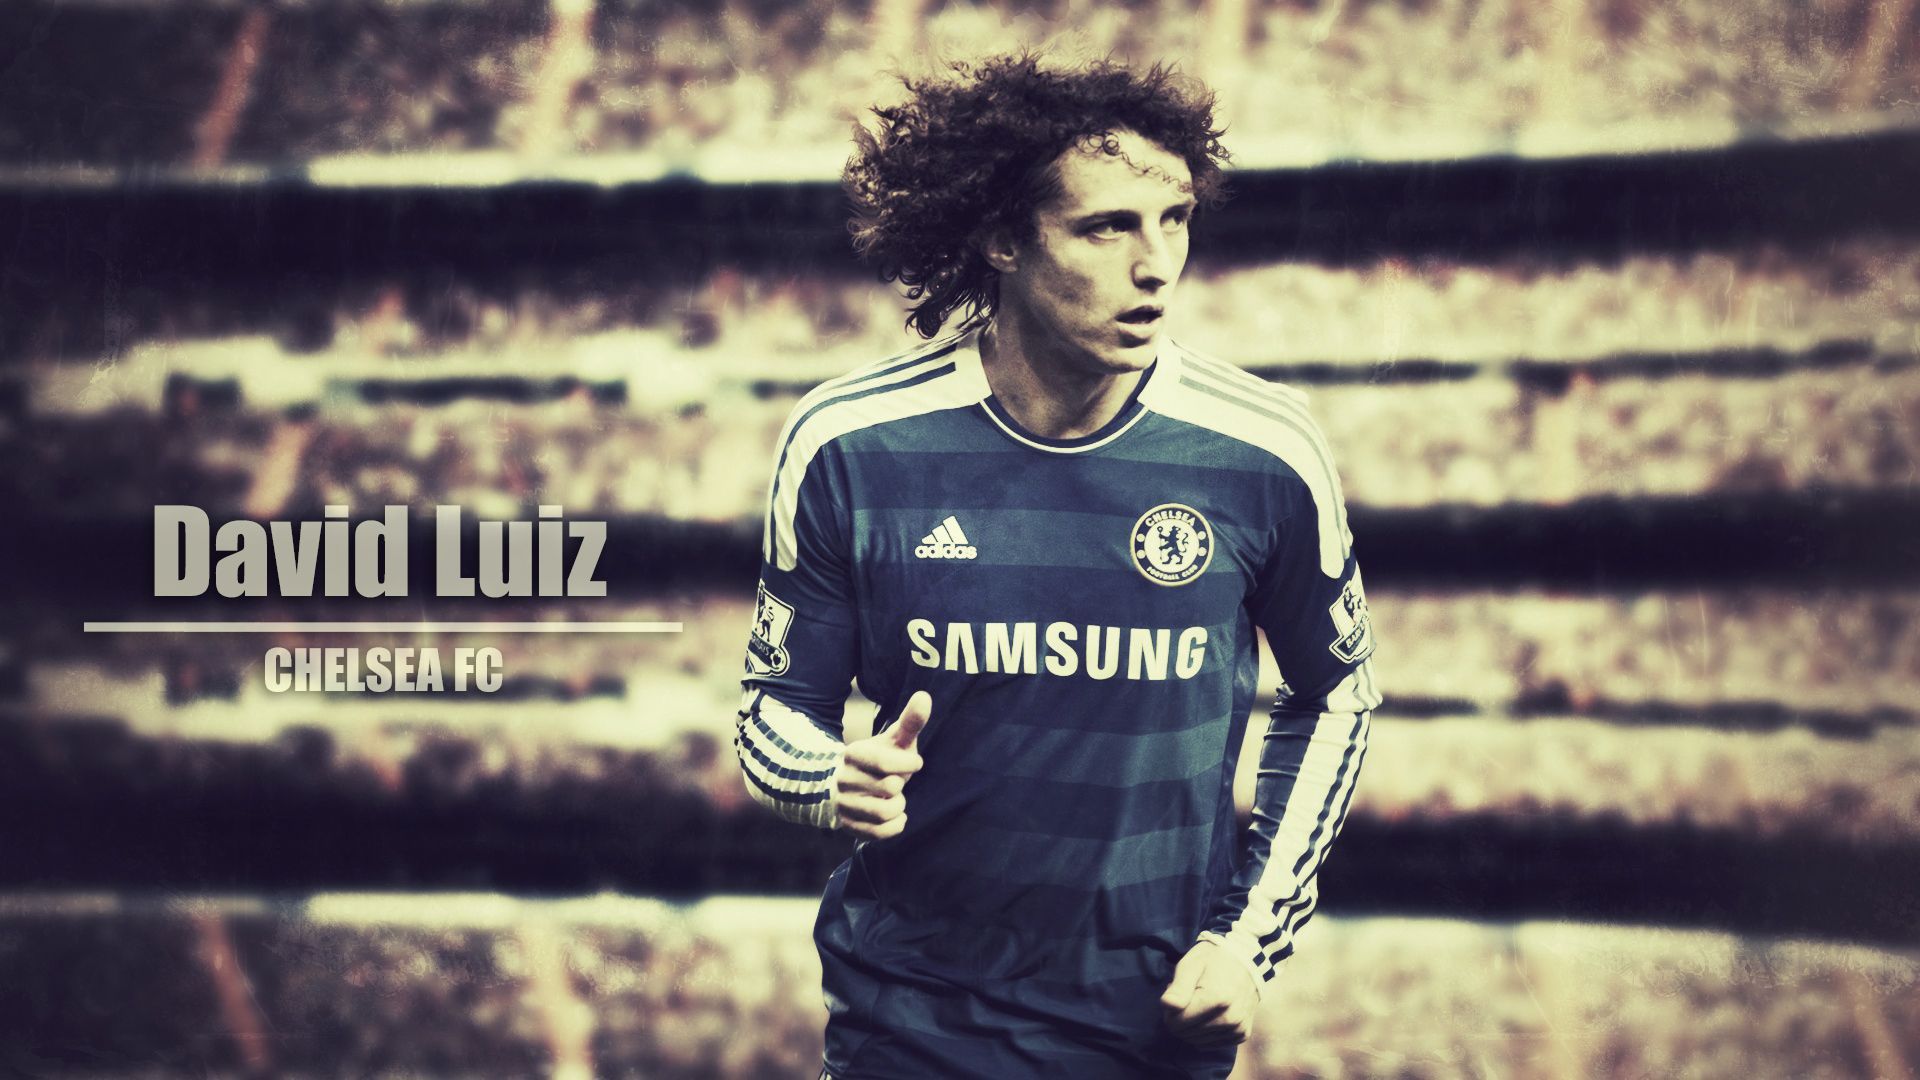 David Luiz Chelsea Wallpaper Desktop Background For